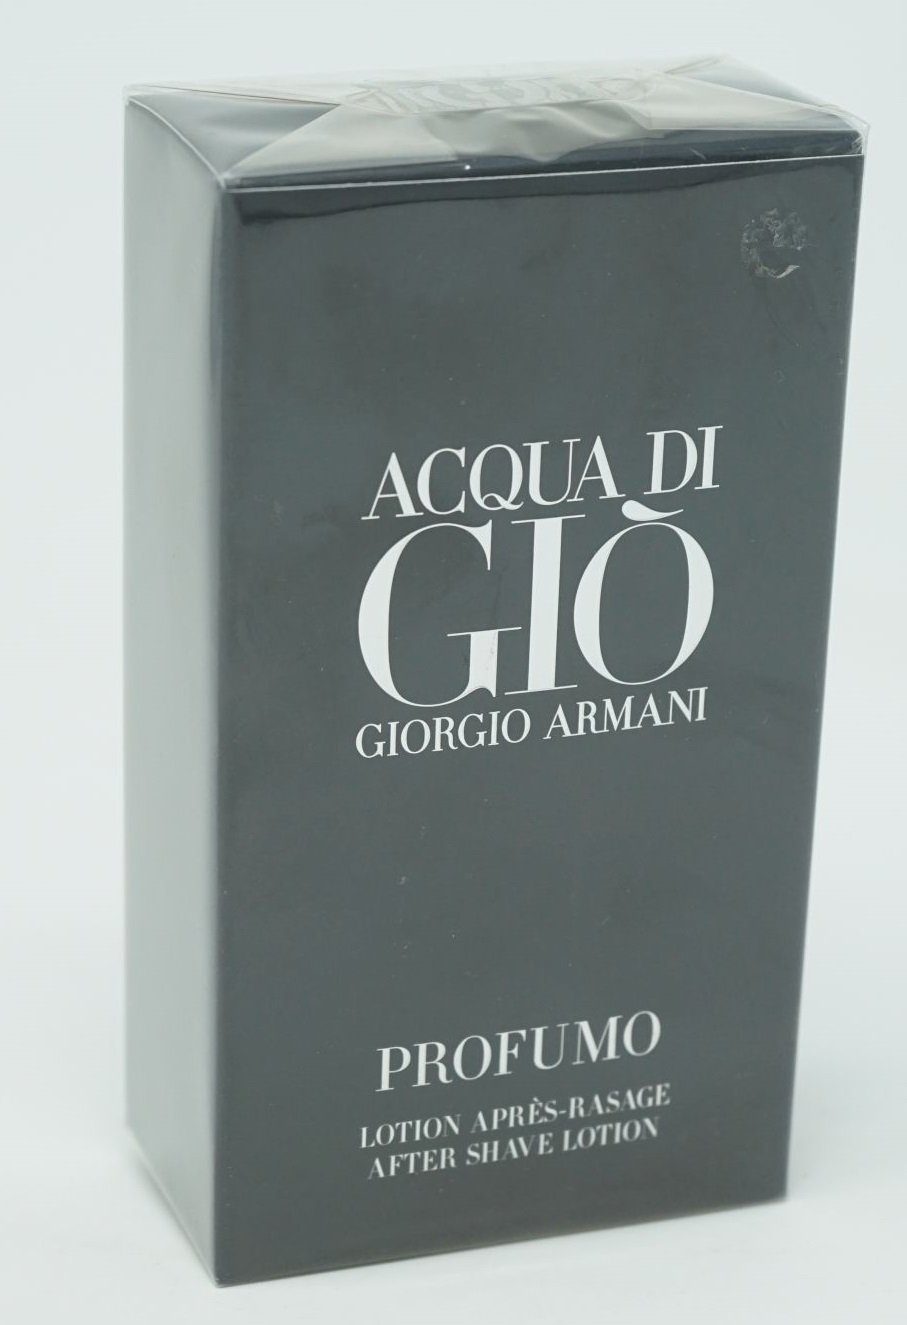 Giorgio Armani Eau de Toilette Armani 100 After Profumo Giorgio Shave Gio ml Lotion di Acqua